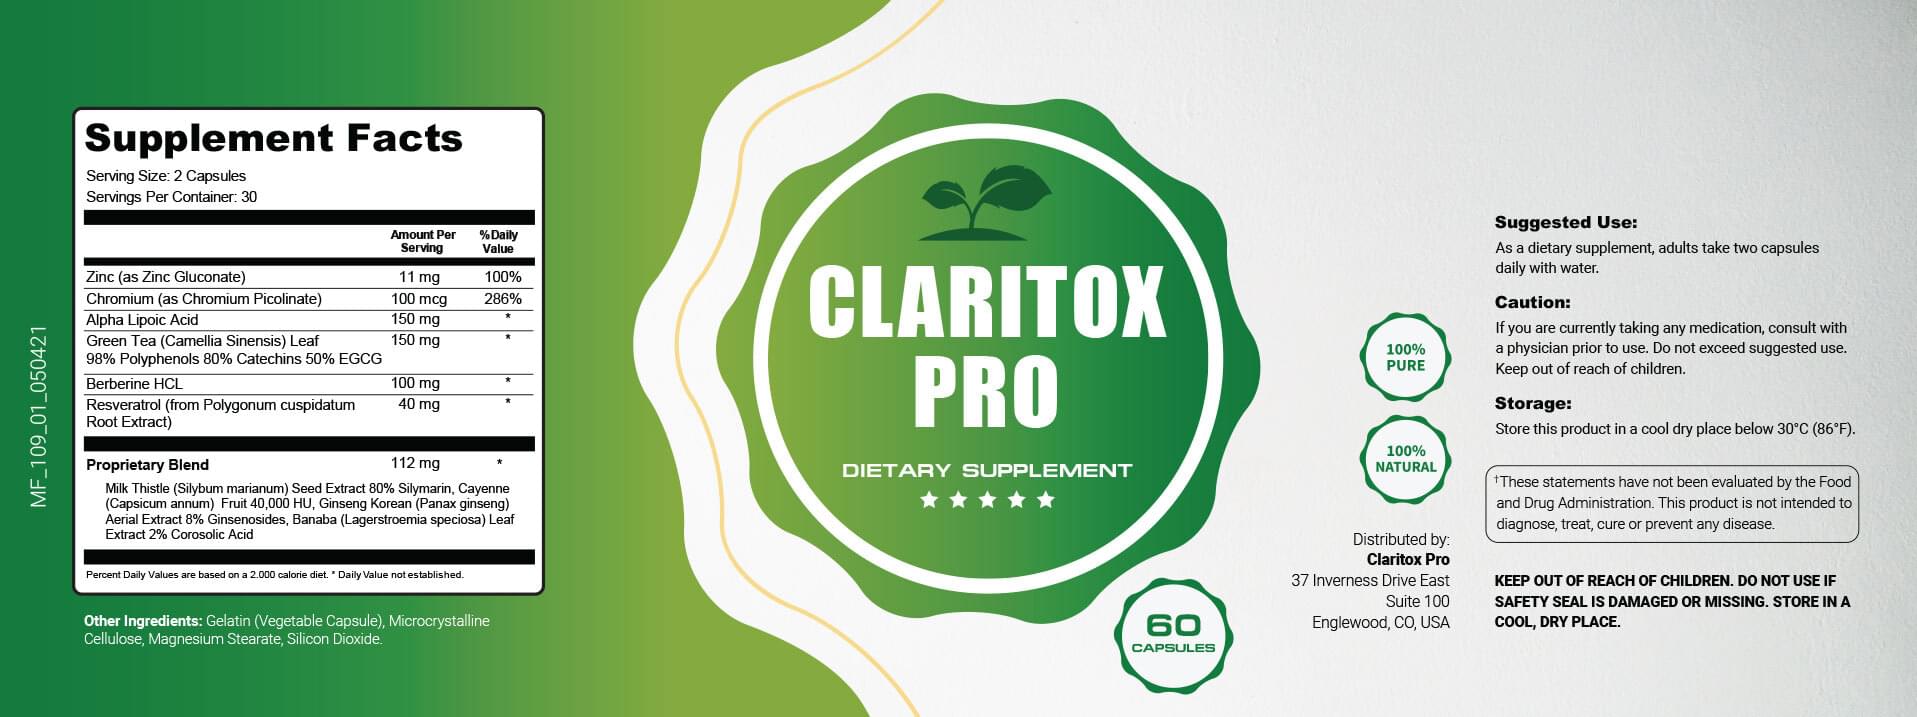 Claritox Pro Label